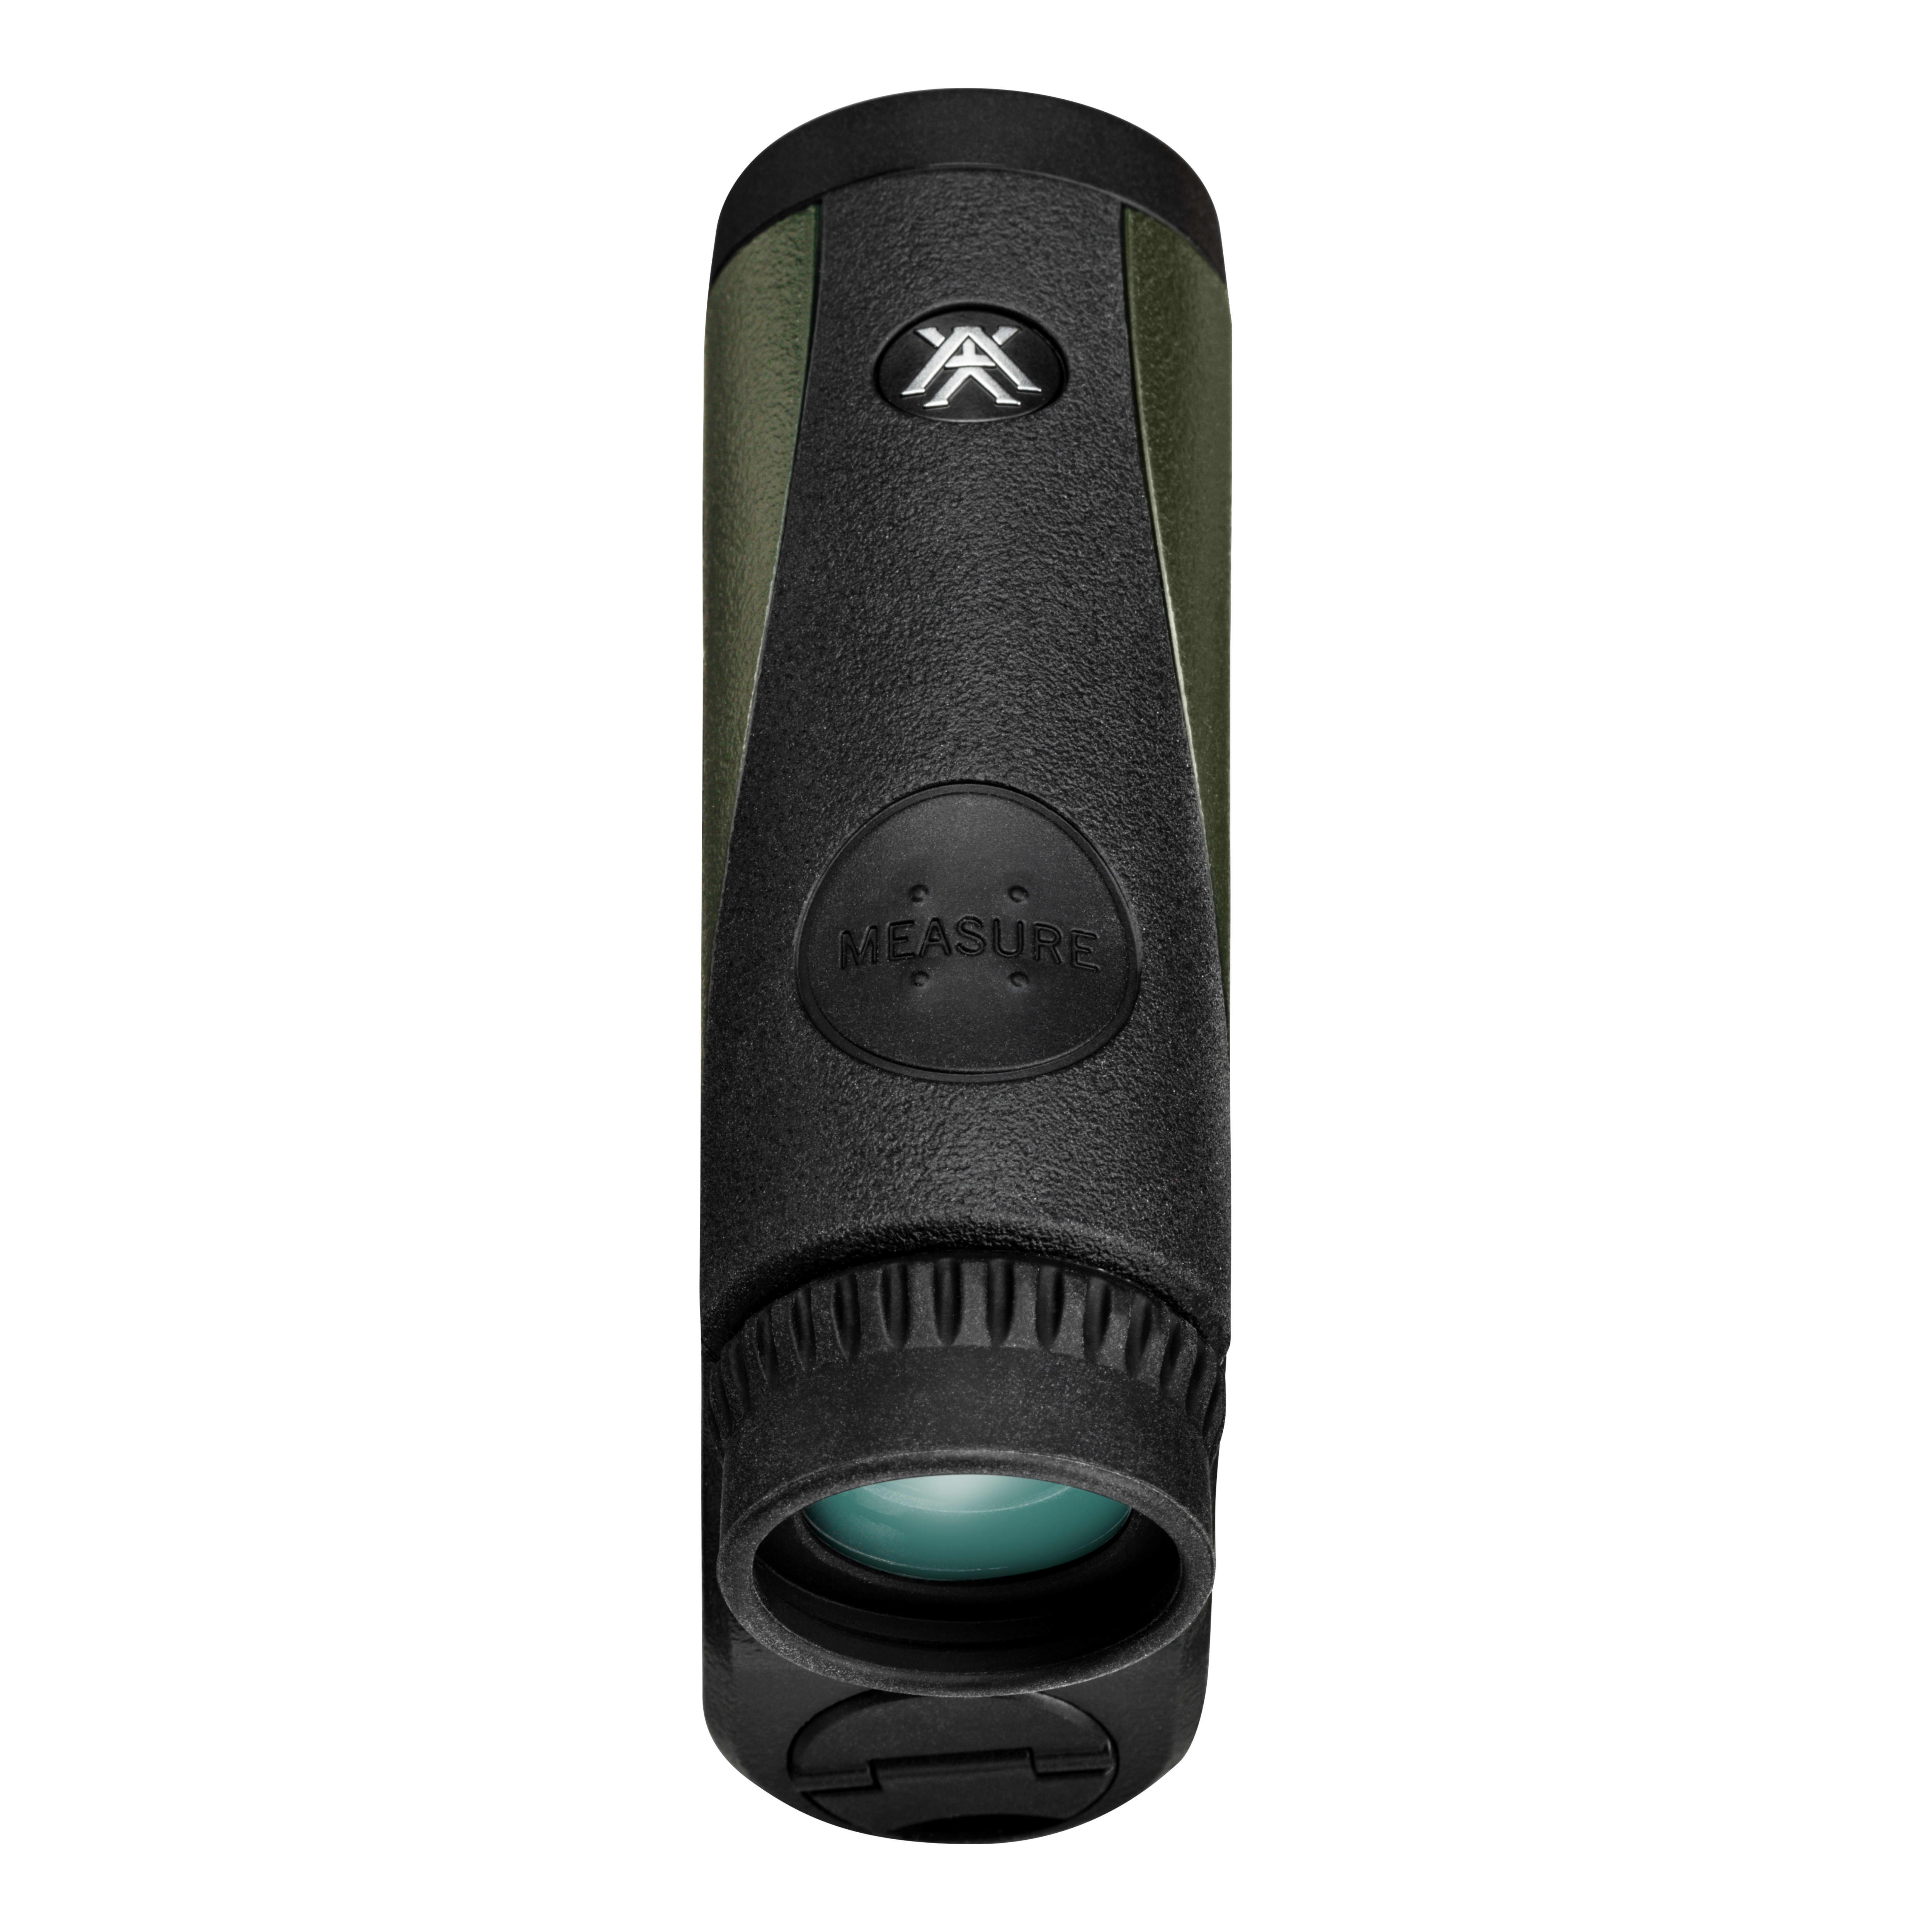 Vortex® Crossfire™ HD1400 Rangefinder